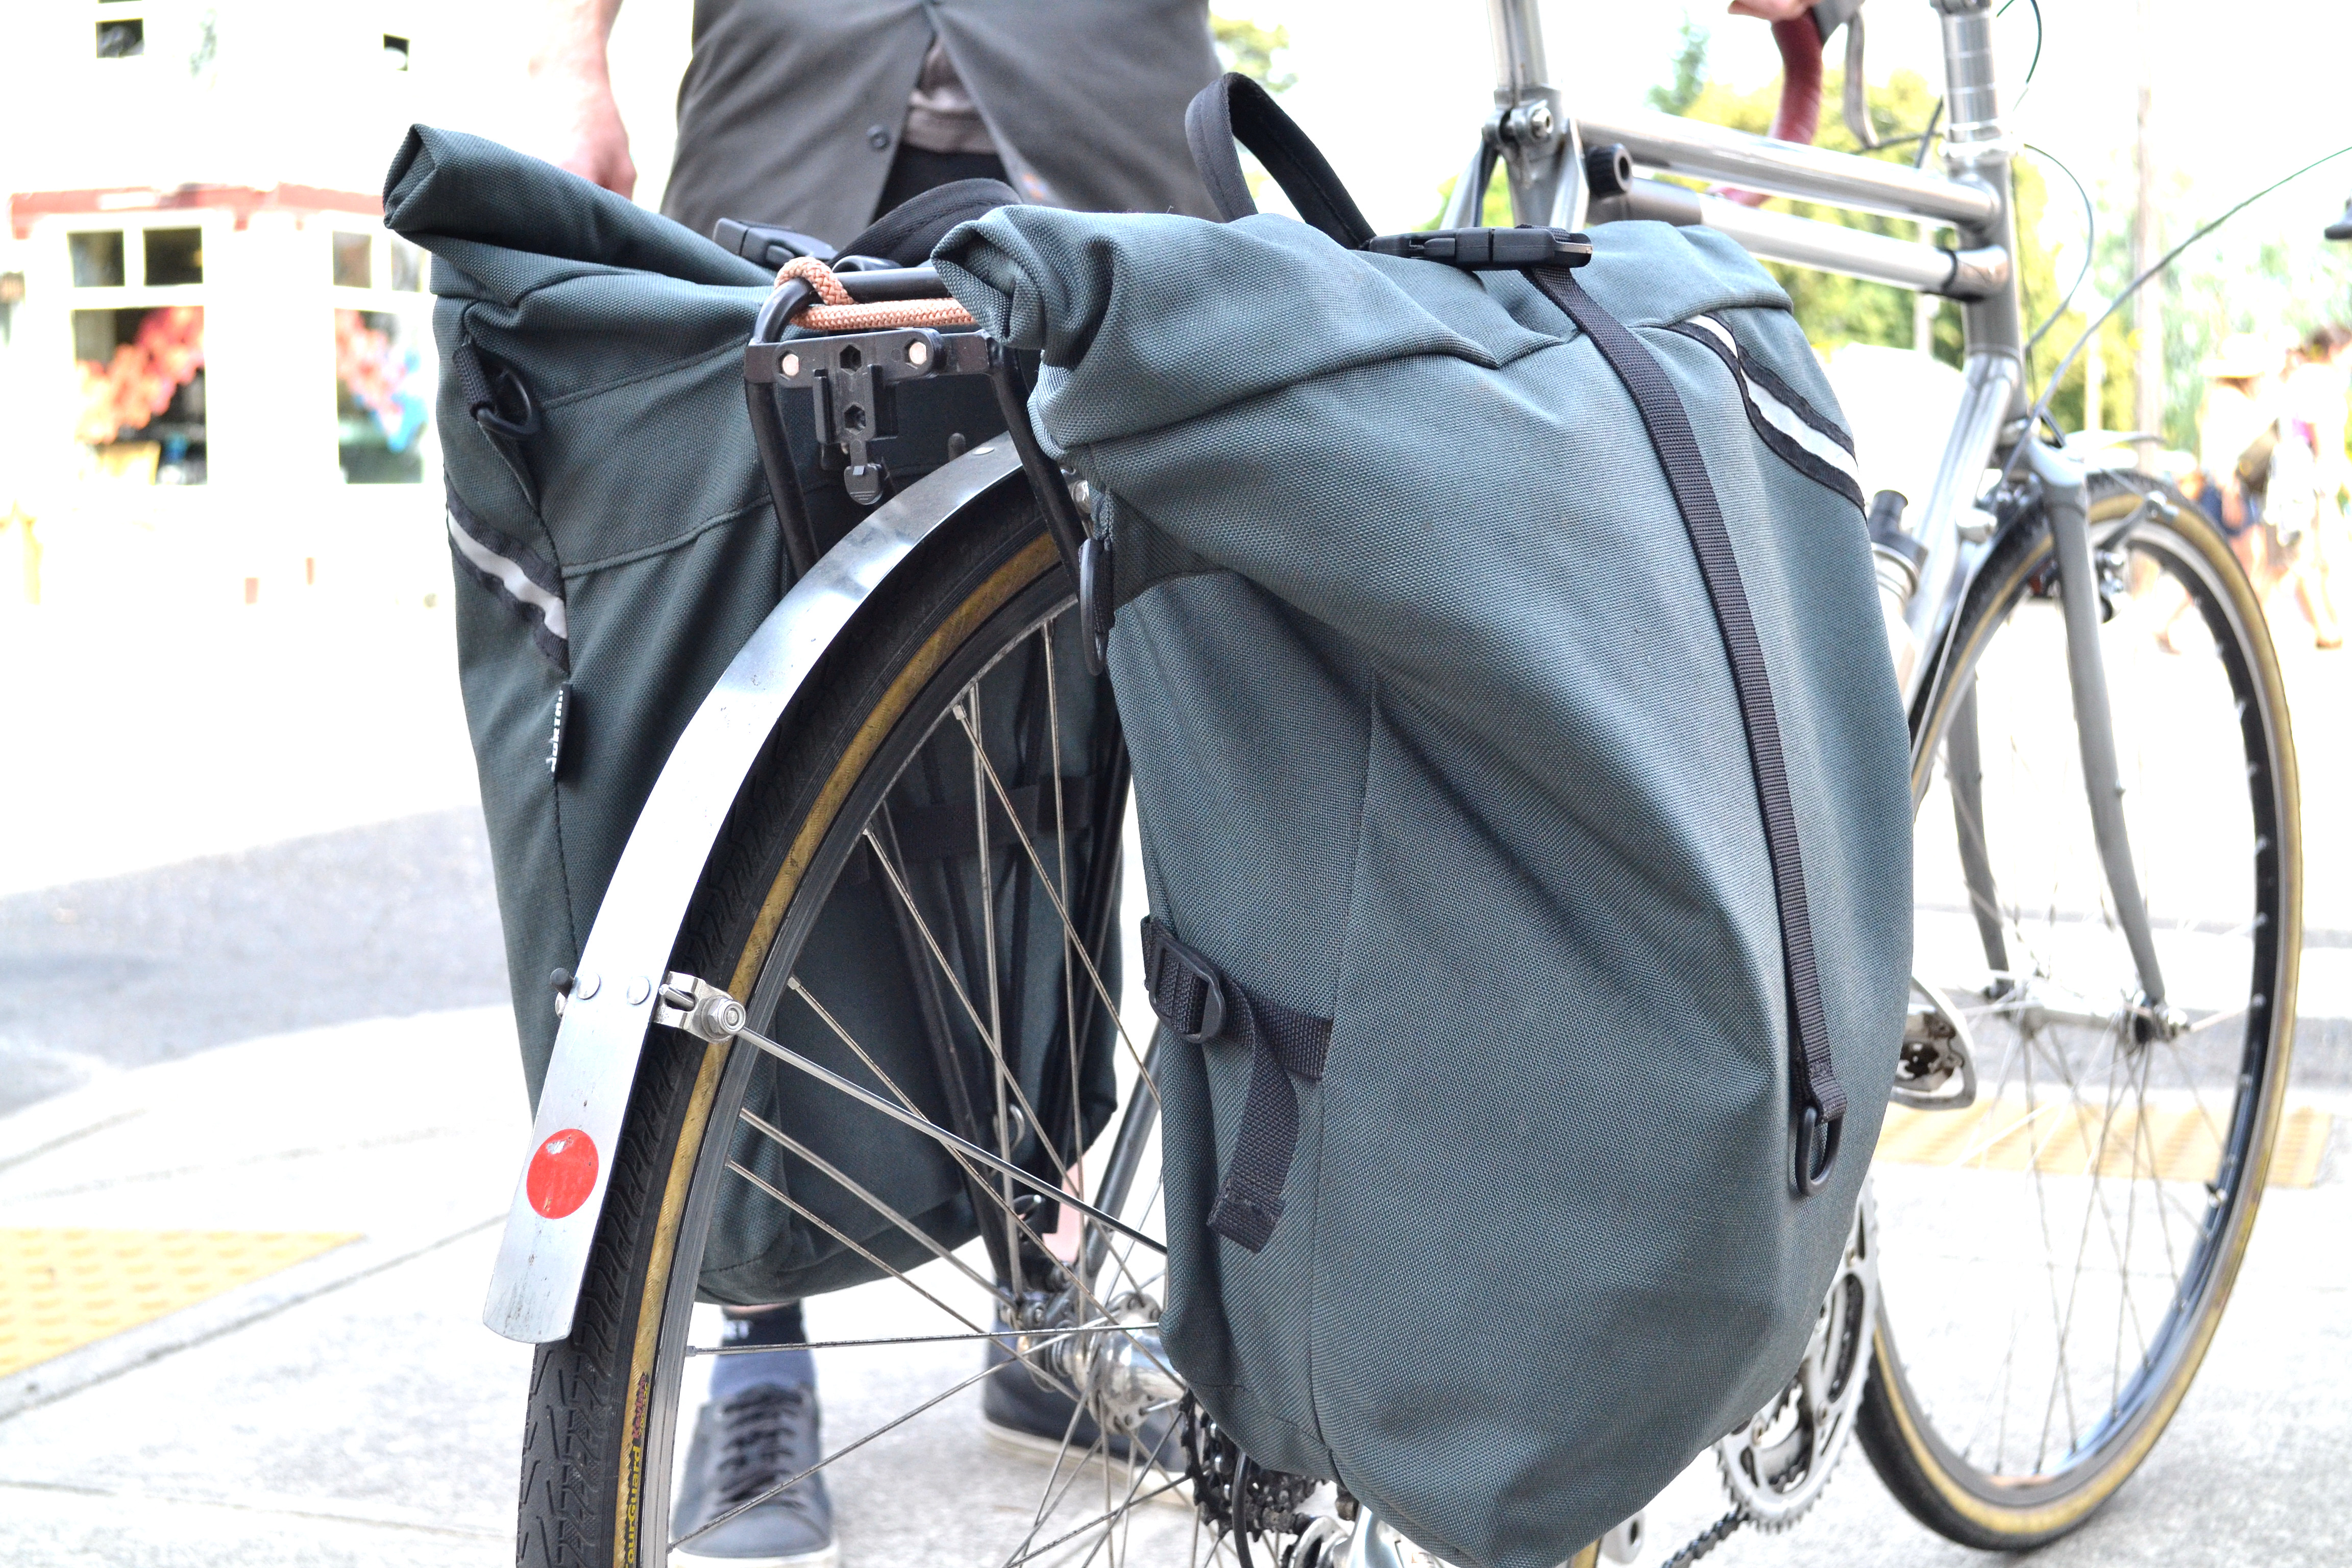 backpack on rear bike rack